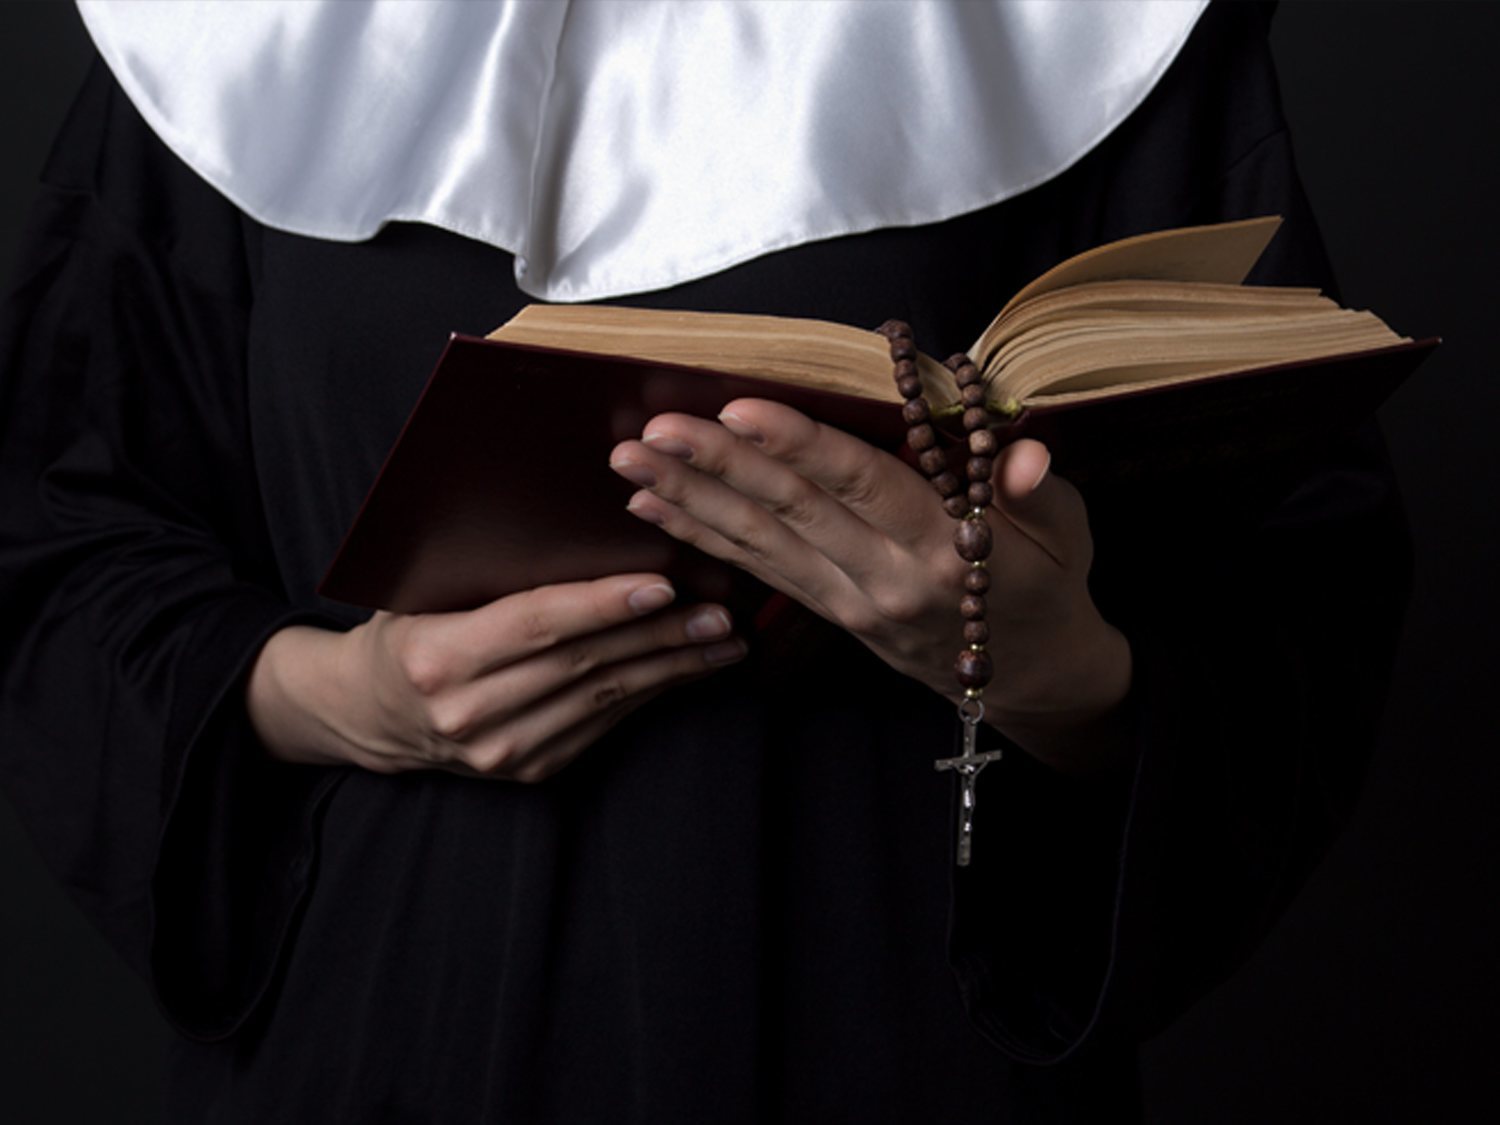 El Vaticano denuncia casos de abusos sexuales y explotación entre monjas en conventos